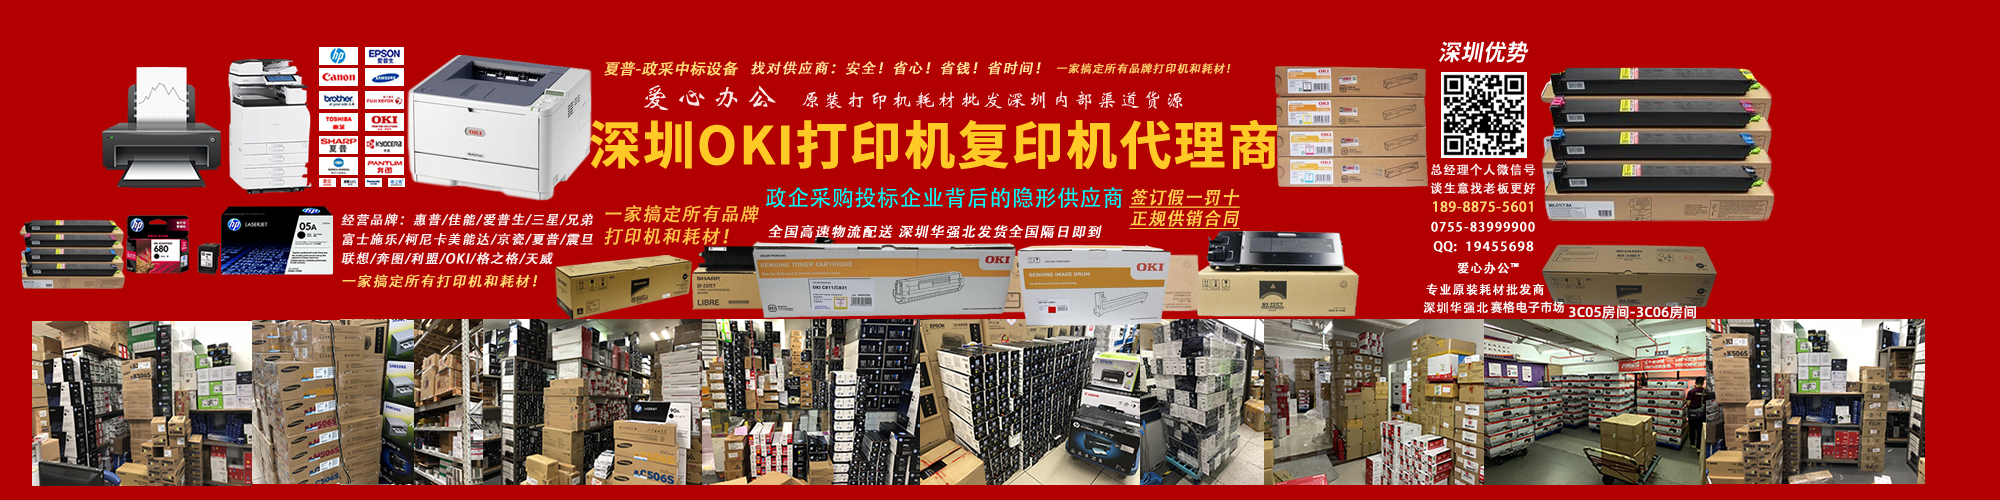 深圳OKI總代理商專業批發OKI打印機及打印耗材